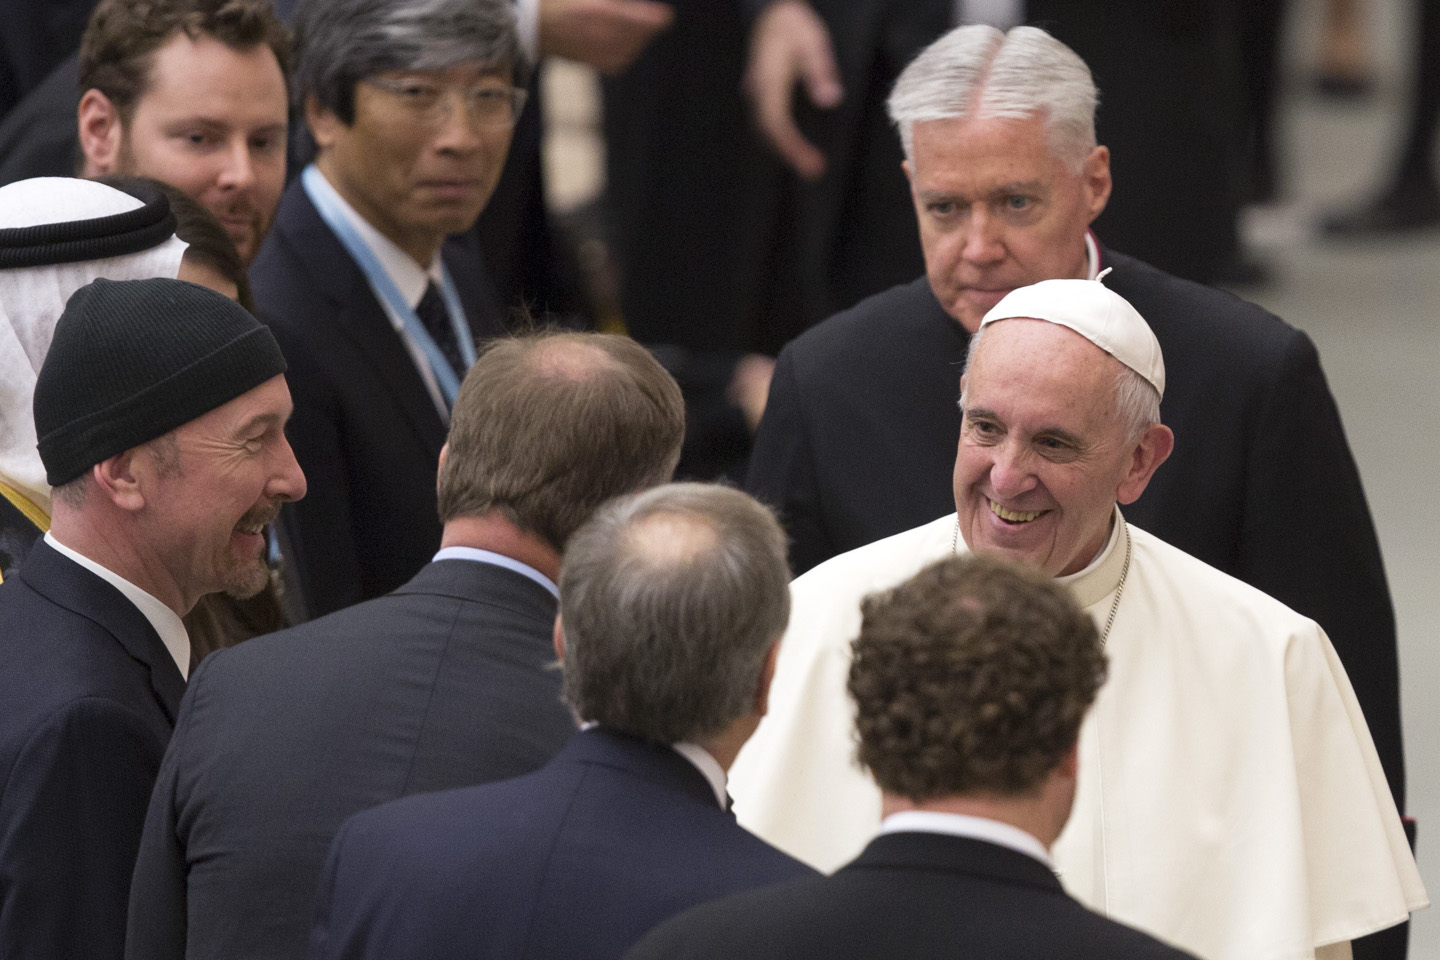 The Edge (à gauche avec le bonnet) rencontre le Pape (à droite) © RICCARDO DE LUCA / ANADOLU AGENCY / AFP